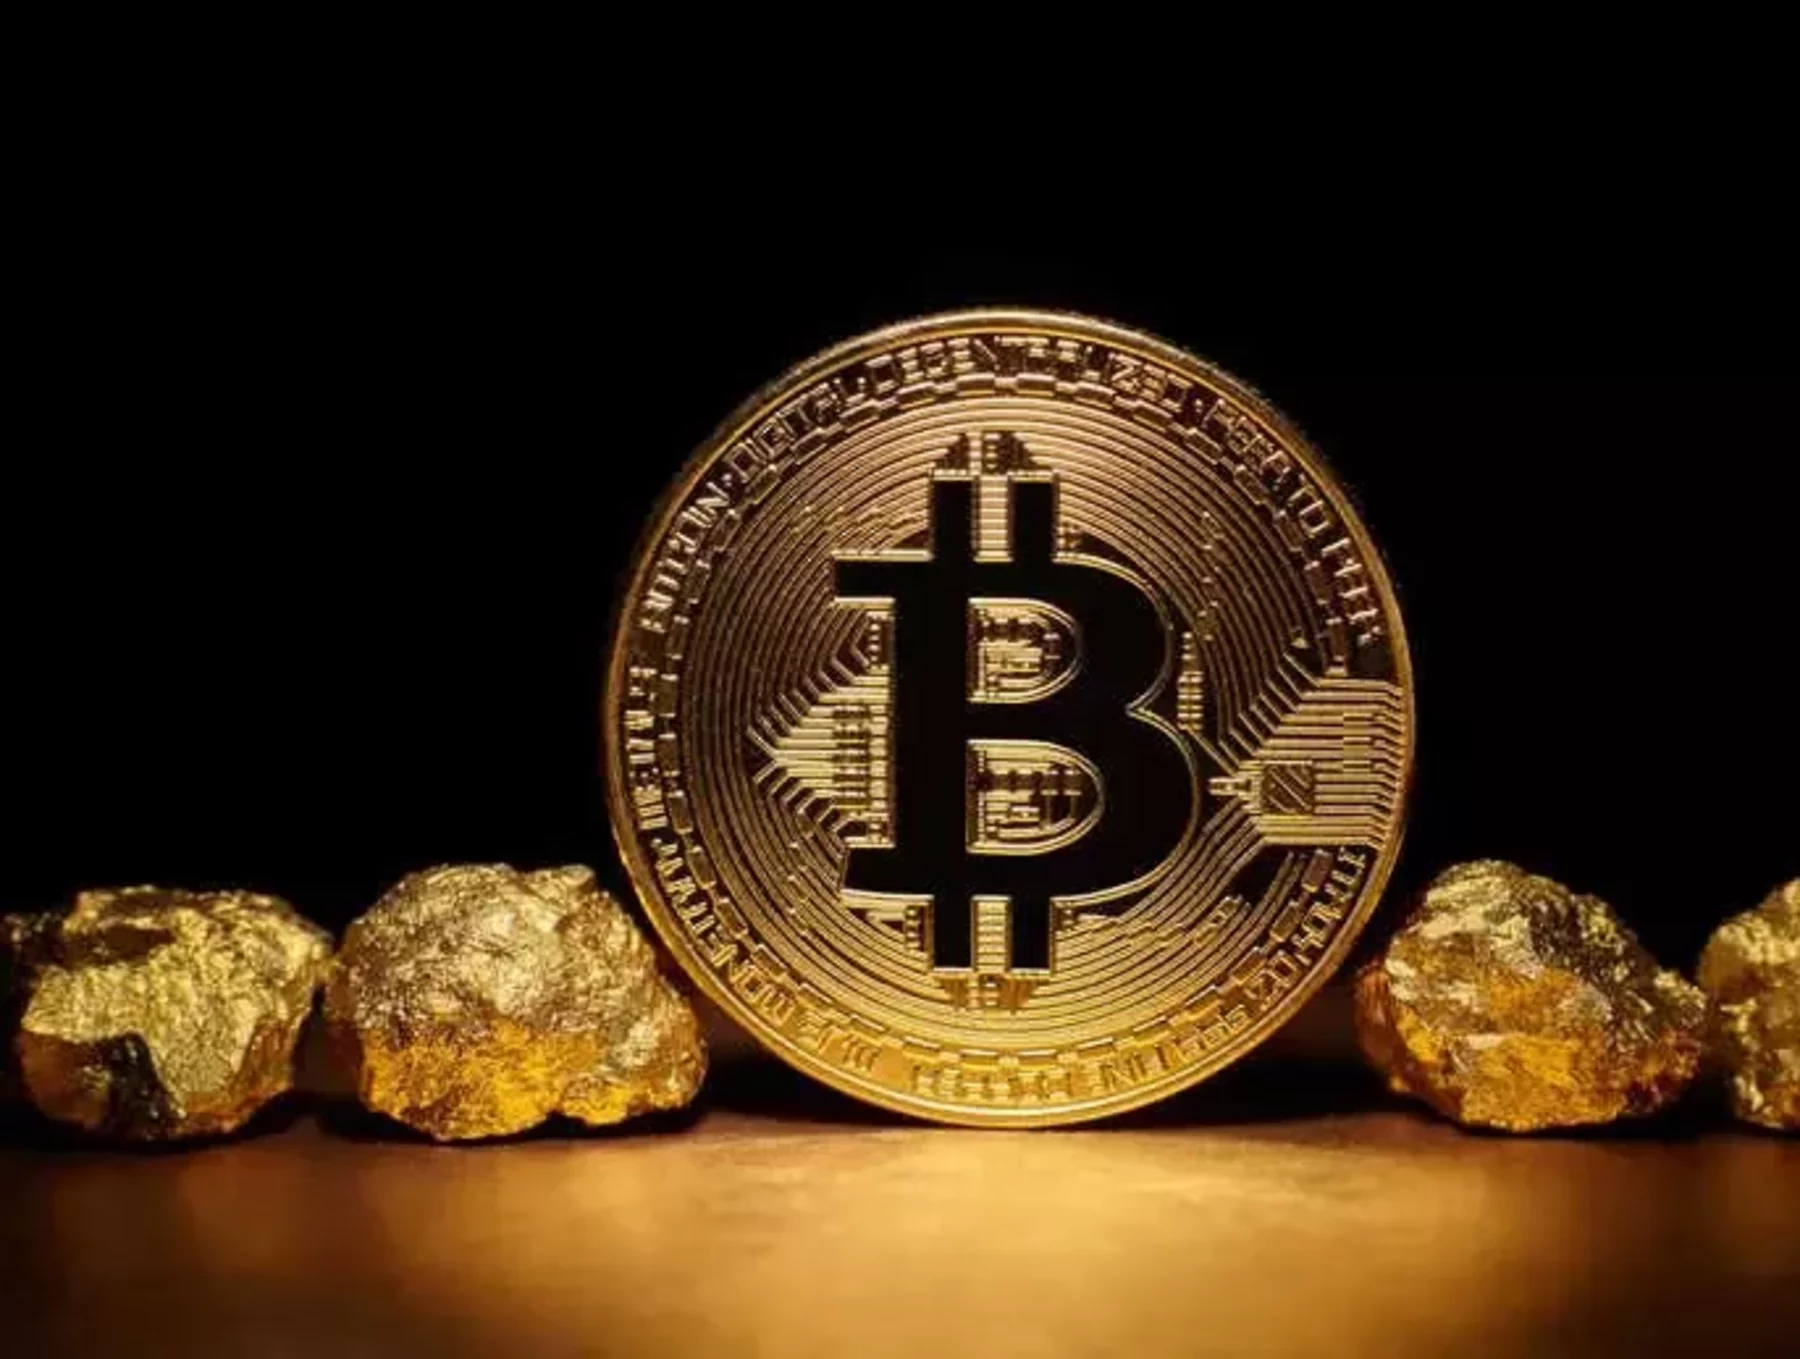 Jack ma bitcoin investicija prekyba kriptovaliutomis Australijoje